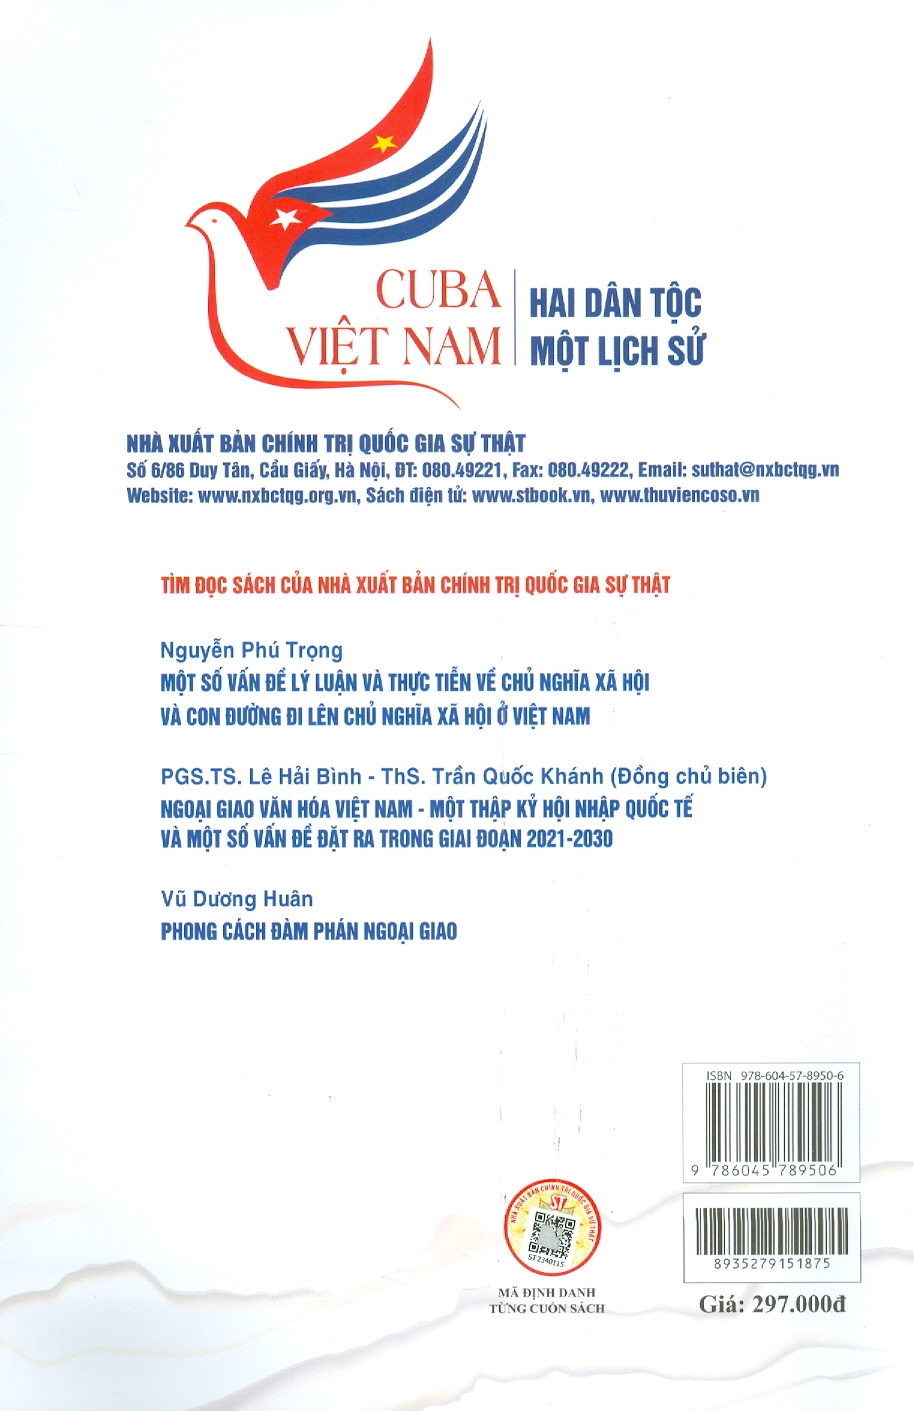 CUBA - VIỆT NAM: HAI DÂN TỘC MỘT LỊCH SỬ - TS. Ruvislei González Saez - Vũ Trung Mỹ, Phạm Hoài Nam dịch - NXB Chính Trị Quốc Gia Sự Thật.